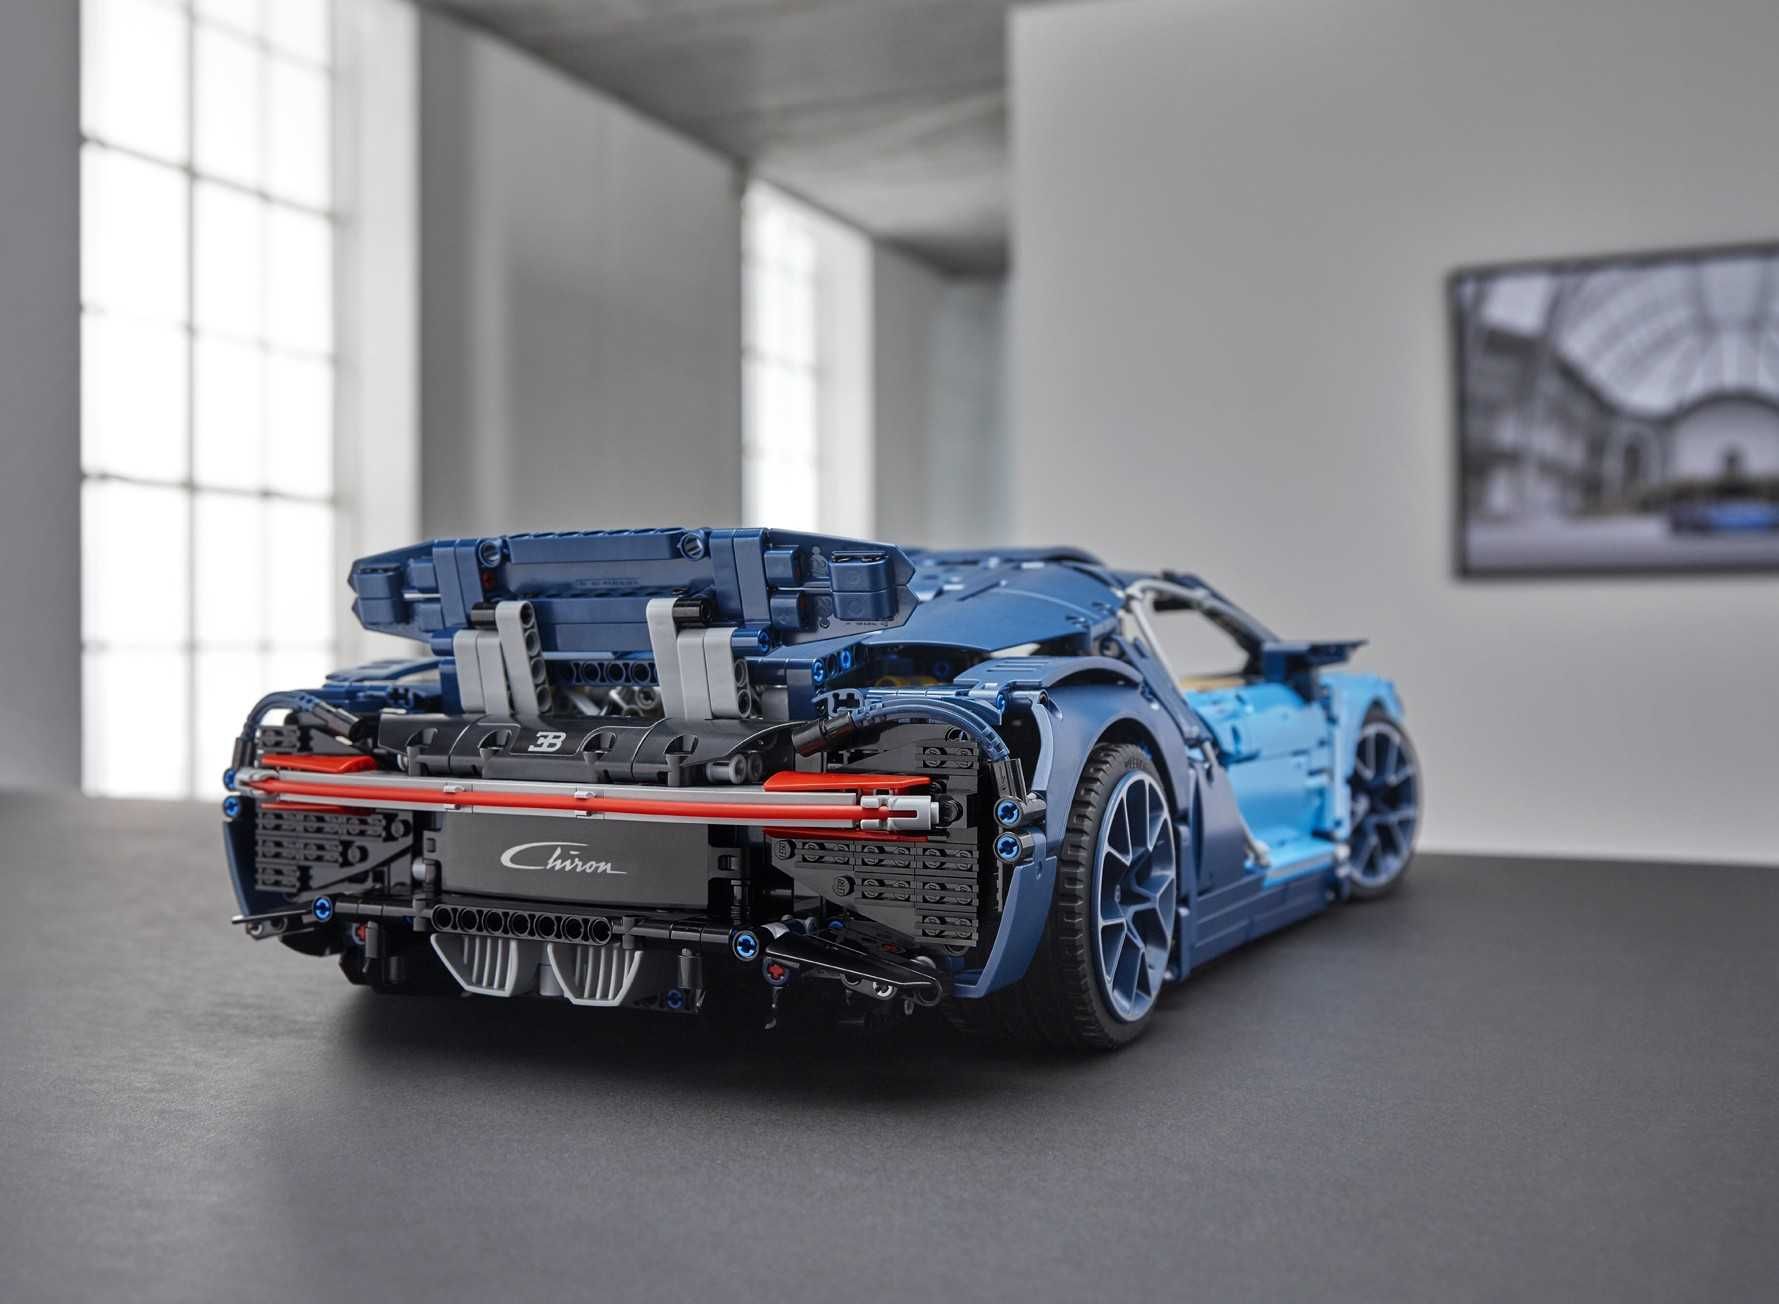 LEGO TECHNIC - 42083 : Bugatti Chiron - NOU sigilat original